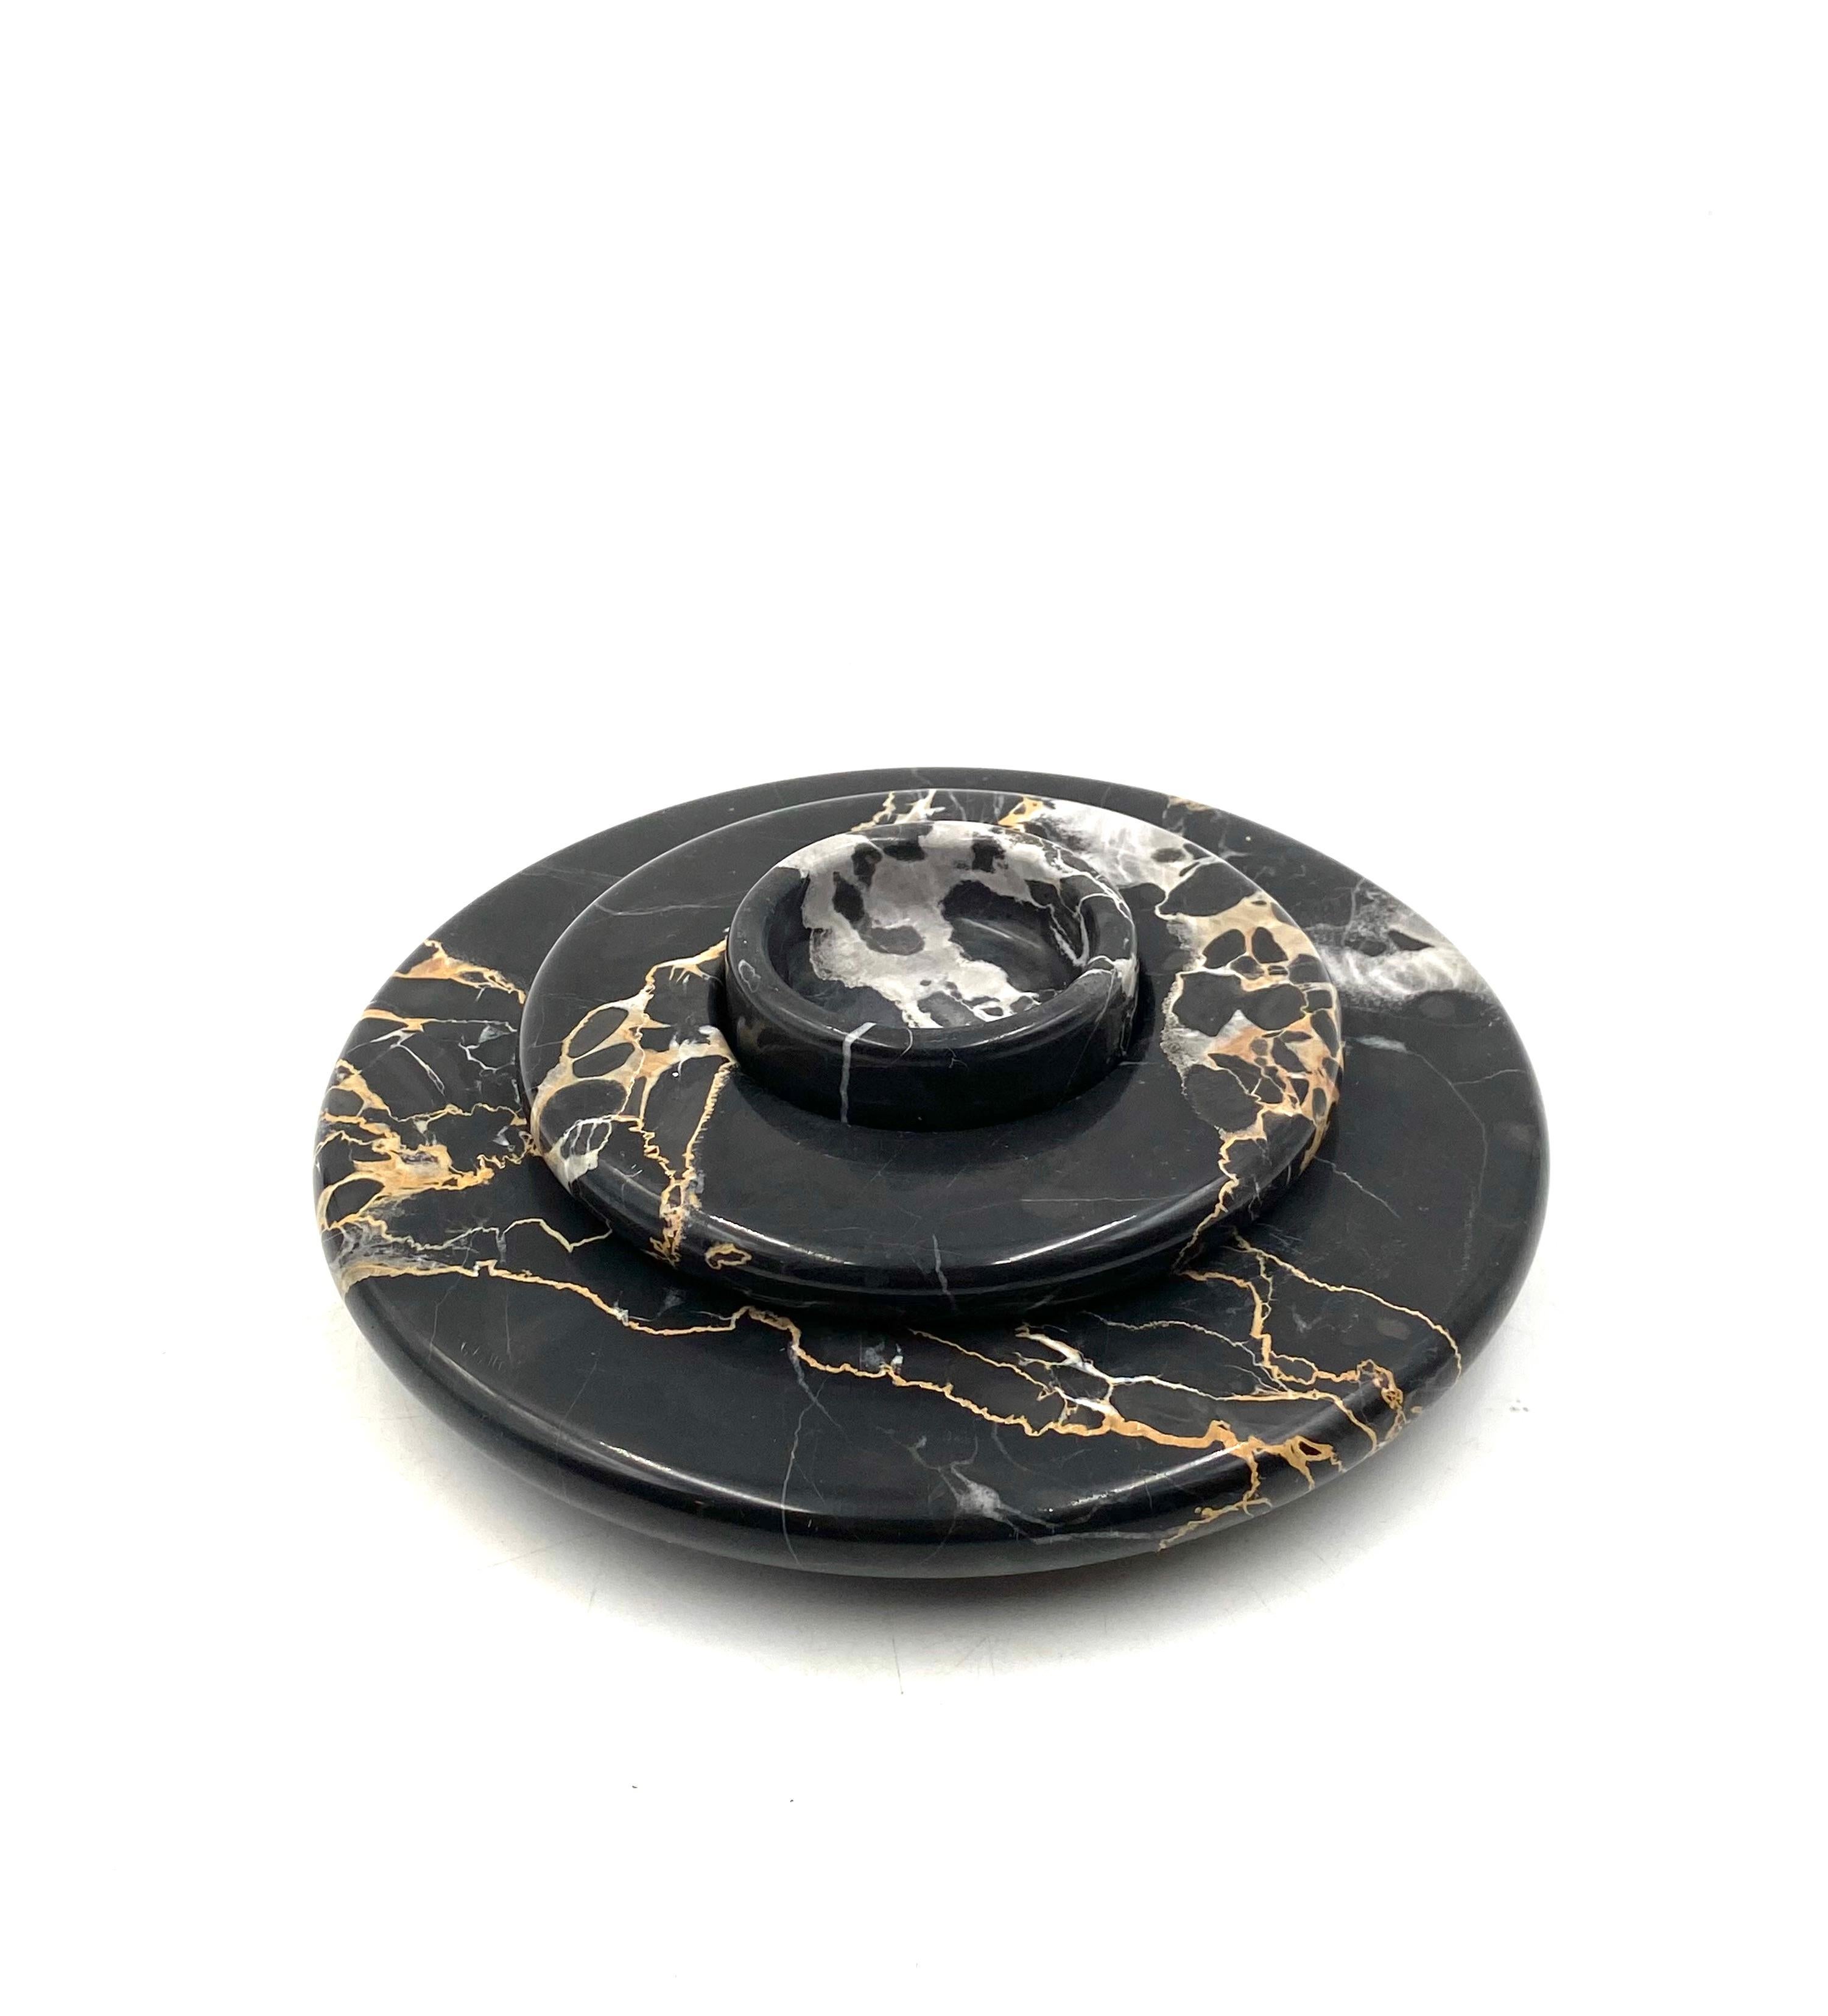 Portoro black marble centerpiece / vide poche, Casigliani Italy, 1970s For Sale 2